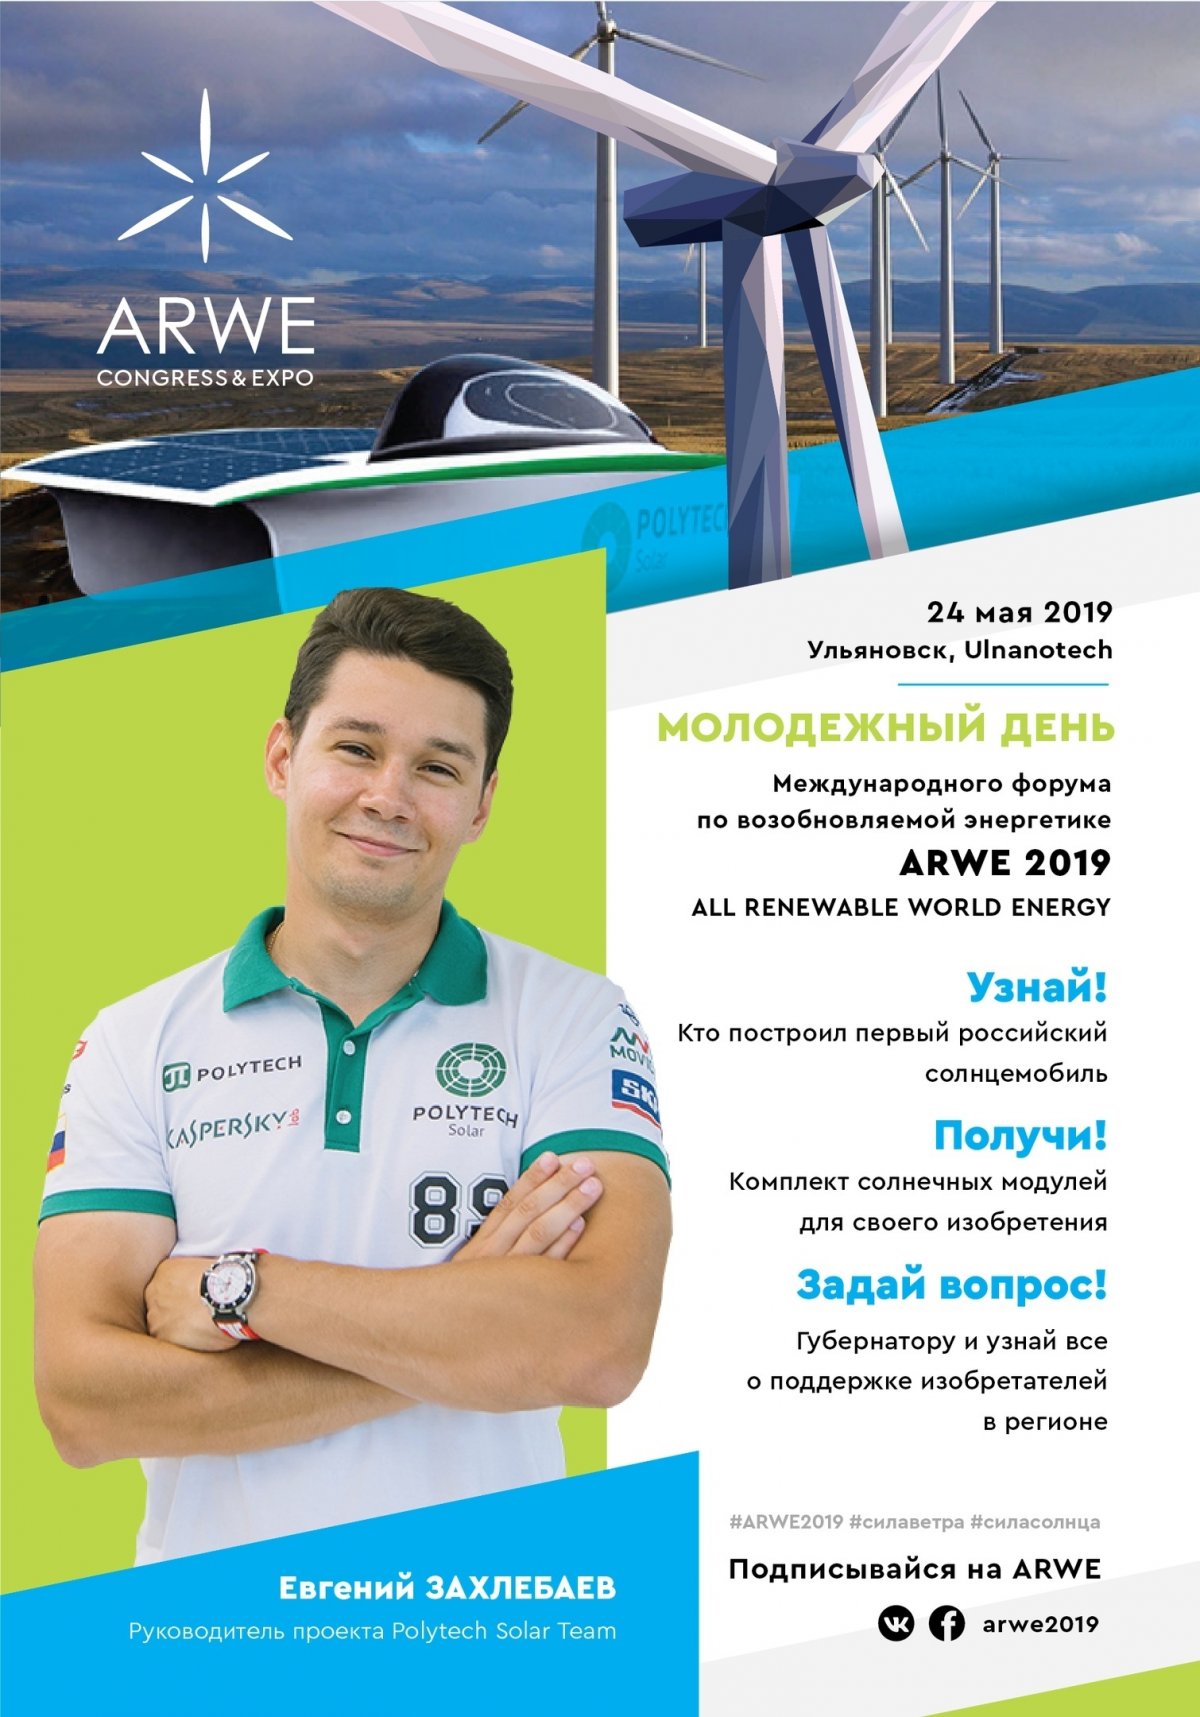 24 мая в Ульяновской области состоится МОЛОДЁЖНЫЙ ДЕНЬ крупнейшего в России форума по возобновляемой энергетике «ARWE 2019» .